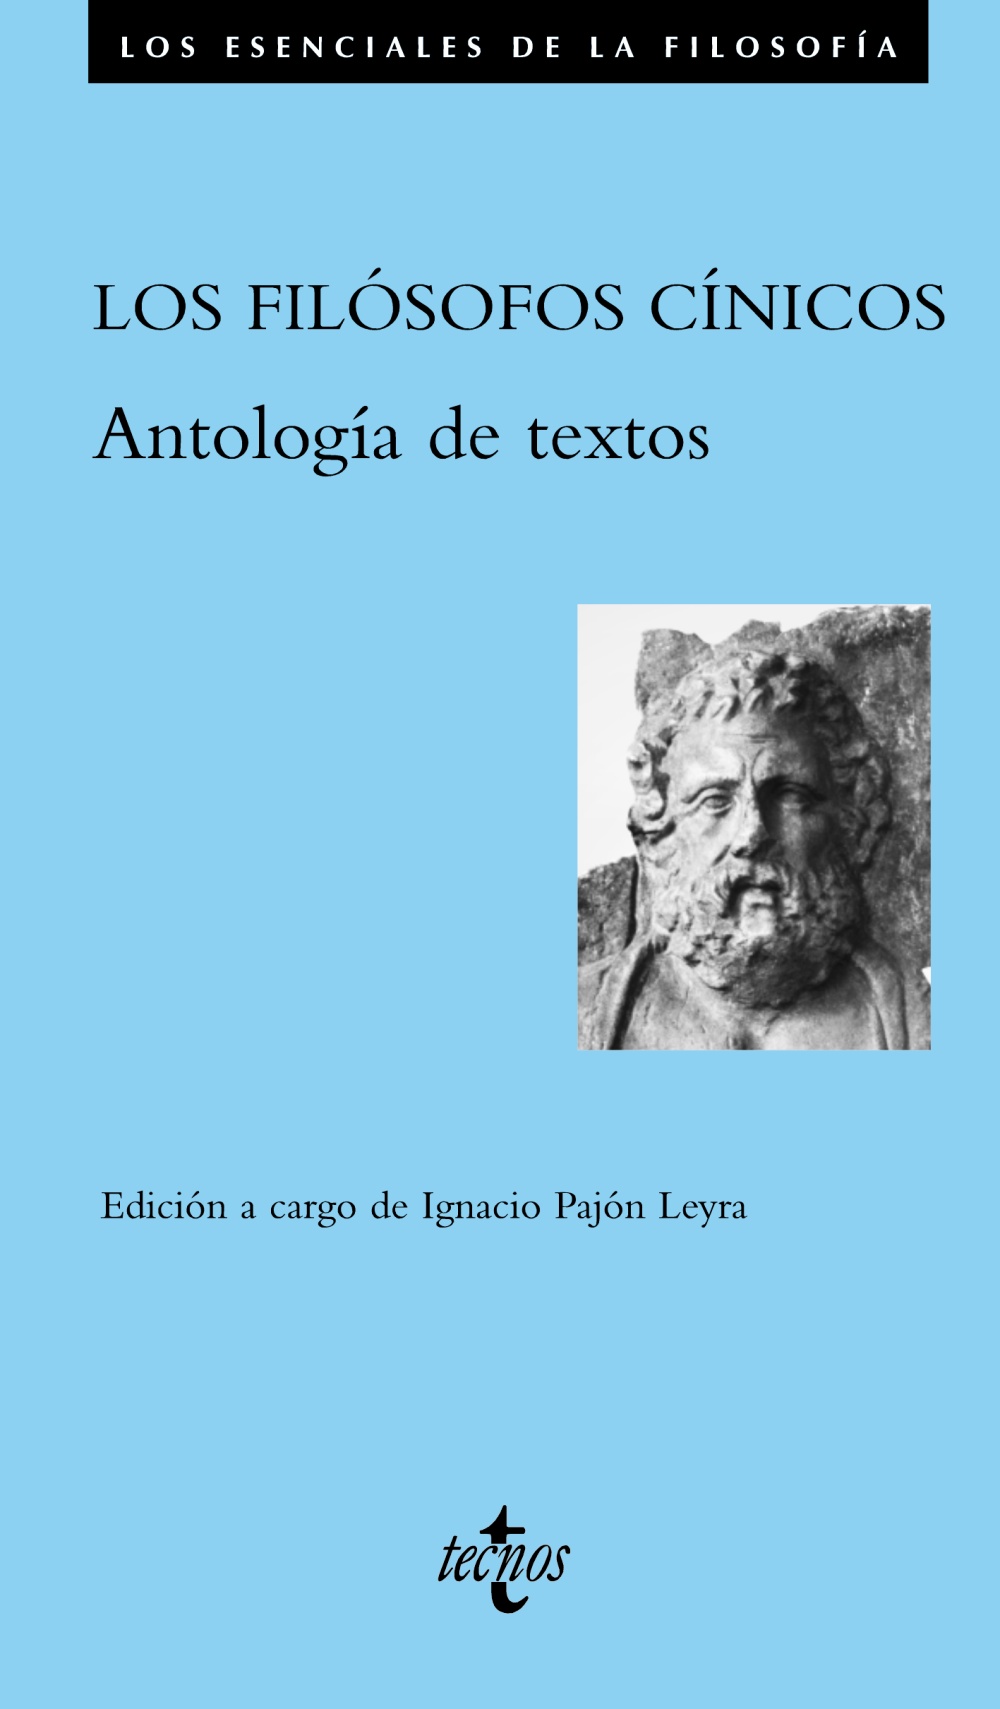 Filósofos cínicos, Los "Antología de textos"